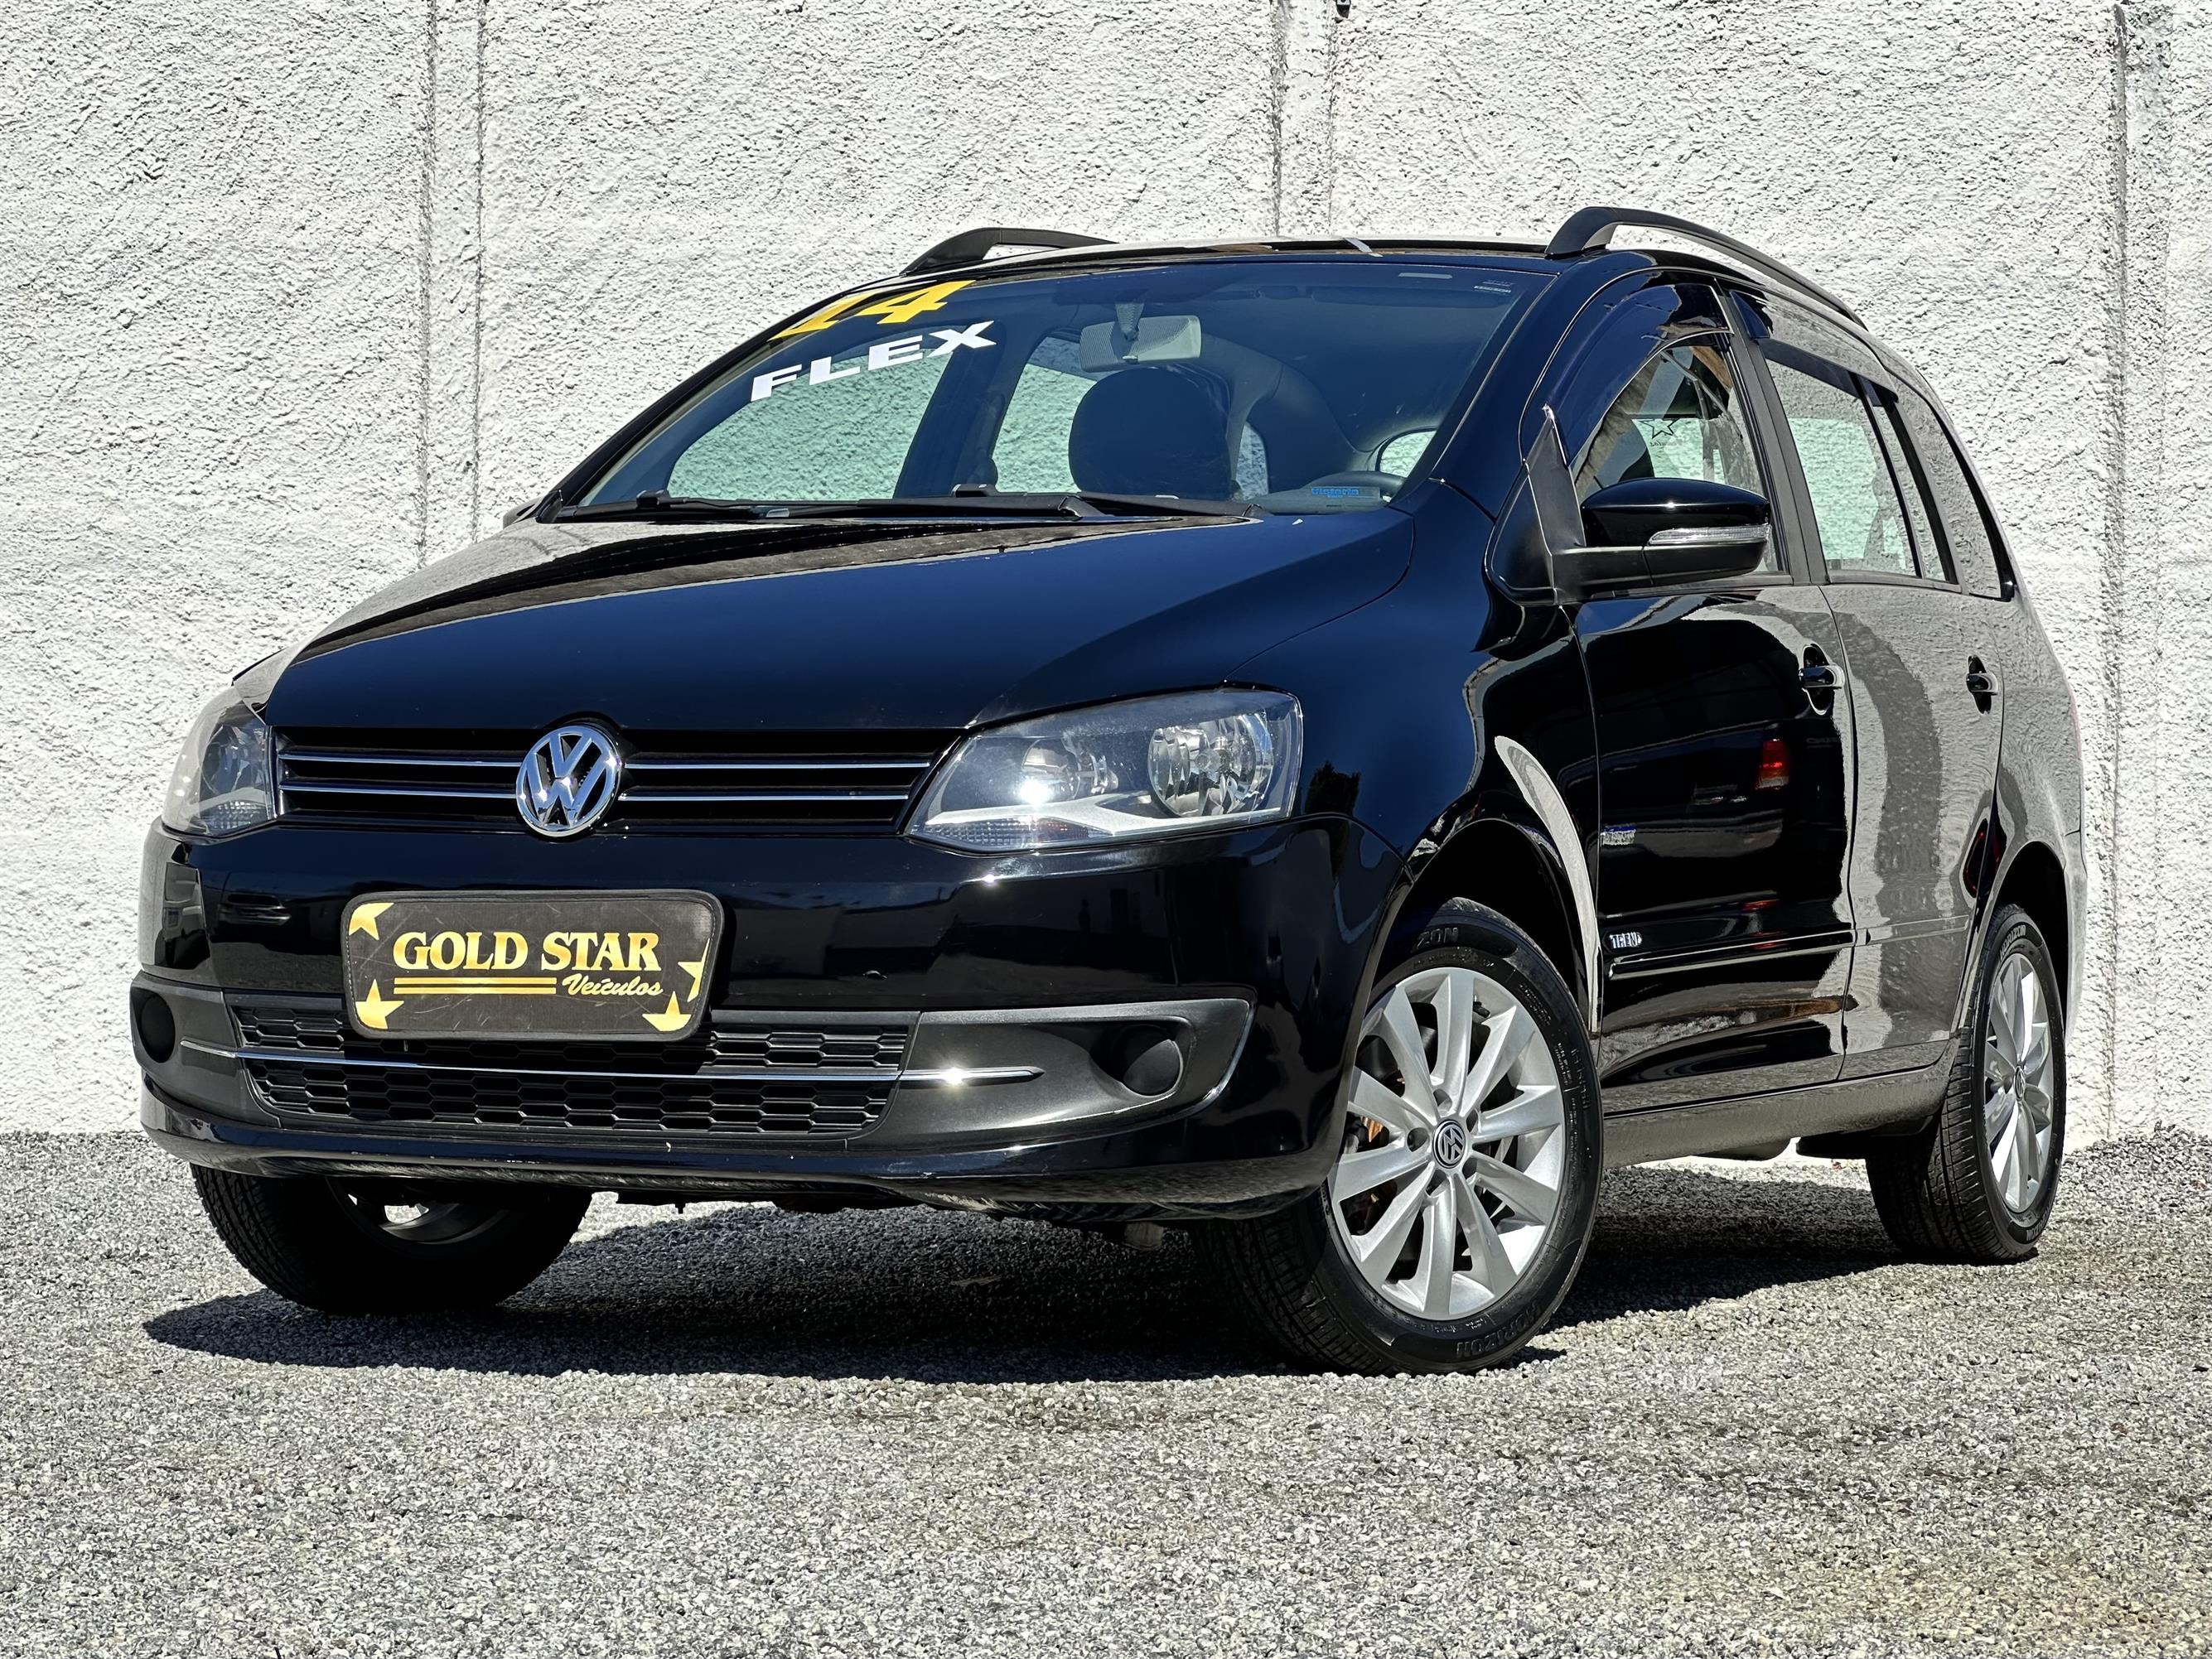 Volkswagen space Fox 1.6 4p Flex Trend 2014